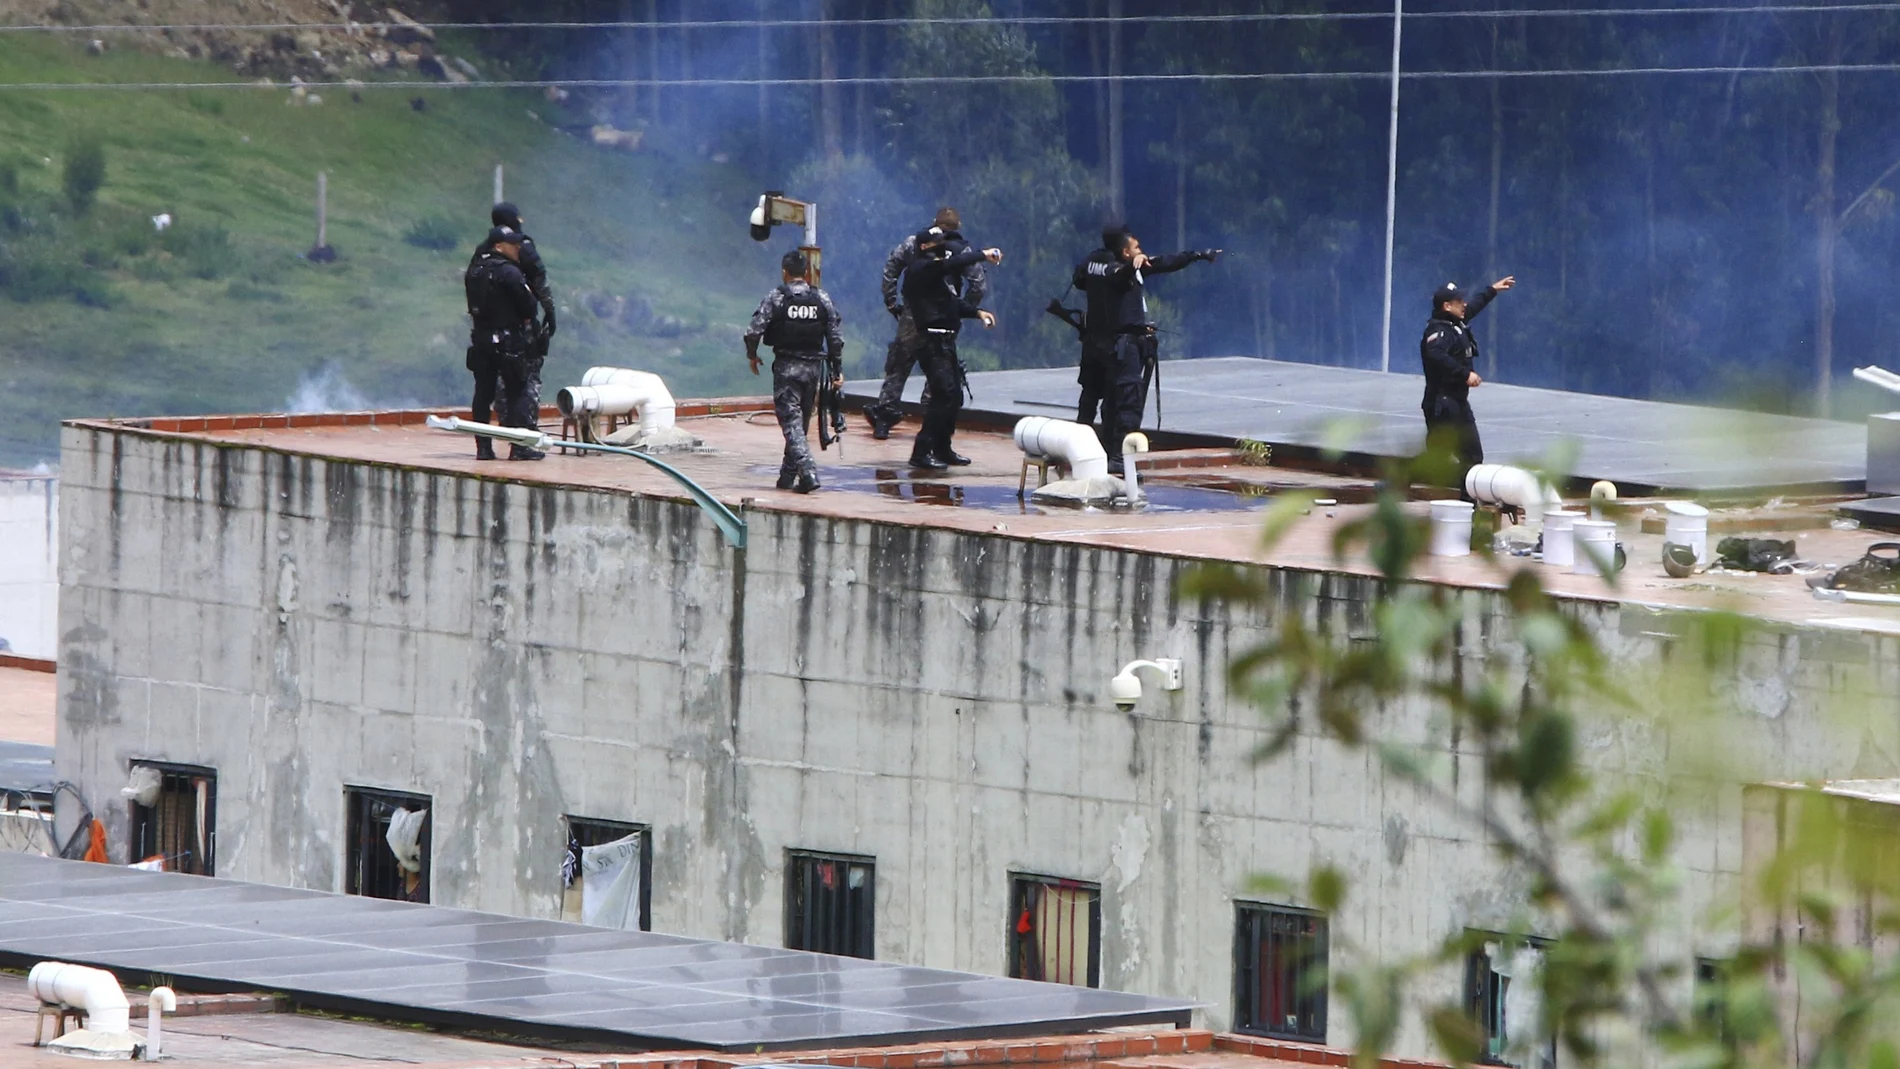 La policía toma posiciones en el techo de la prisión de Turi después de un motín mortal en la prisión de Cuenca, Ecuador, el domingo 3 de abril de 2022.